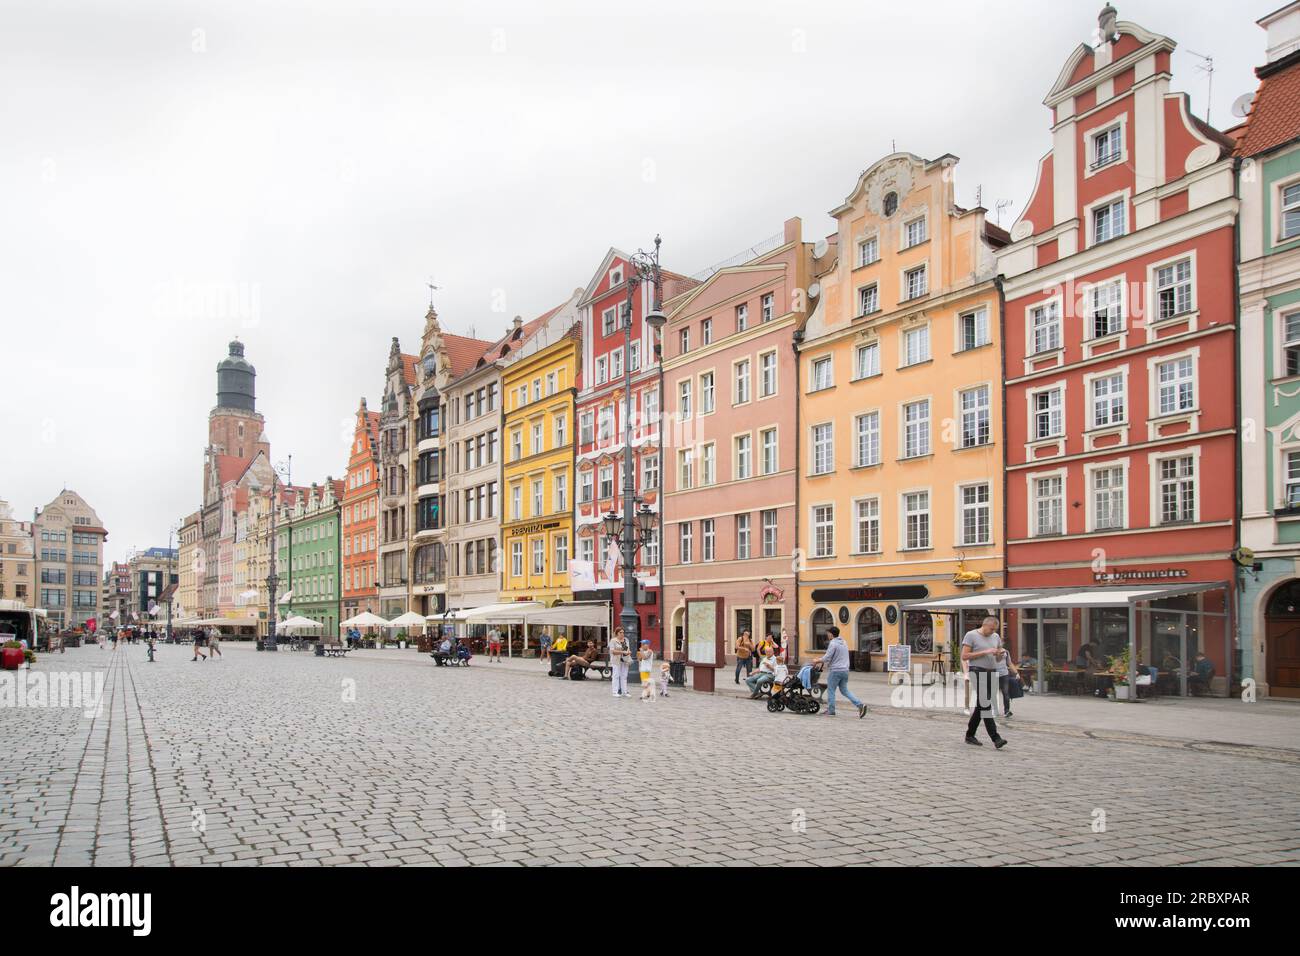 Street scene of Rynek, Wroclaw, Poland Stock Photo